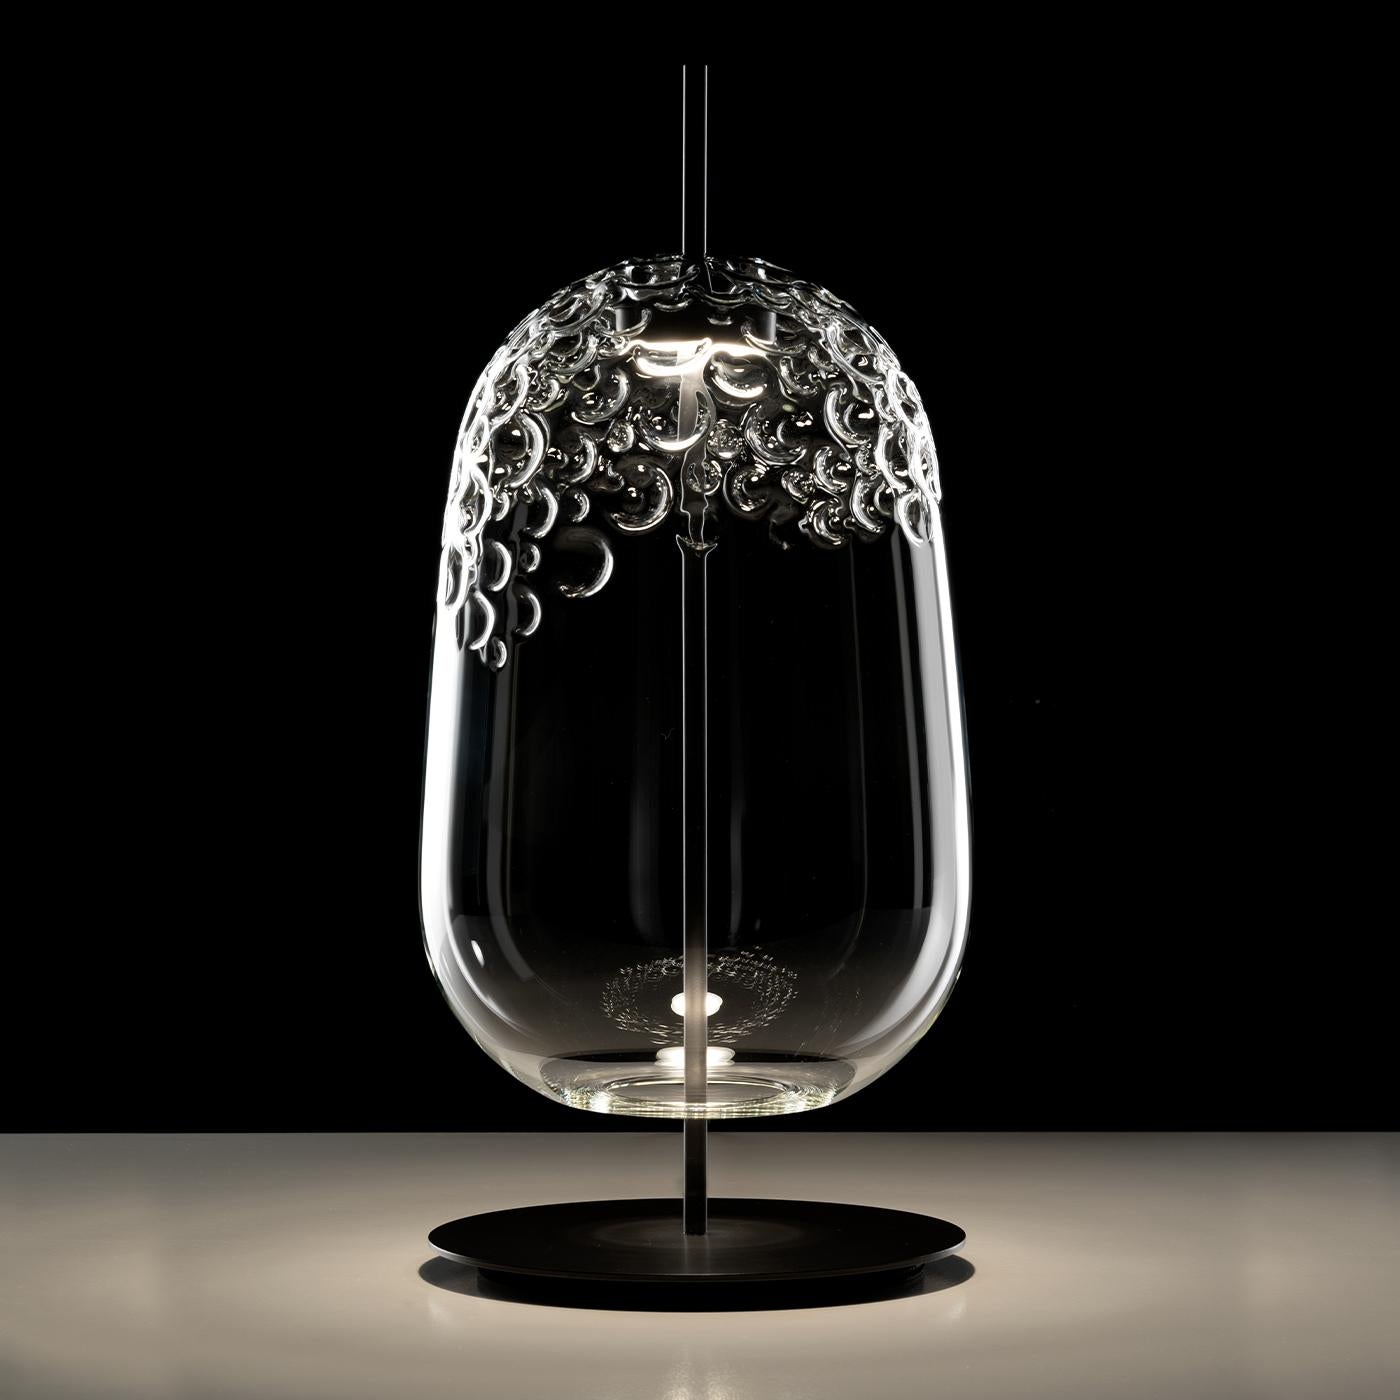 Suspension et lampe de table en verre soufflé transparent avec structure en métal opaque peint en anthracite. Le précieux travail à la main a permis d'obtenir une texture irrégulière qui rappelle la fabrication du cuir tanné au requin, également